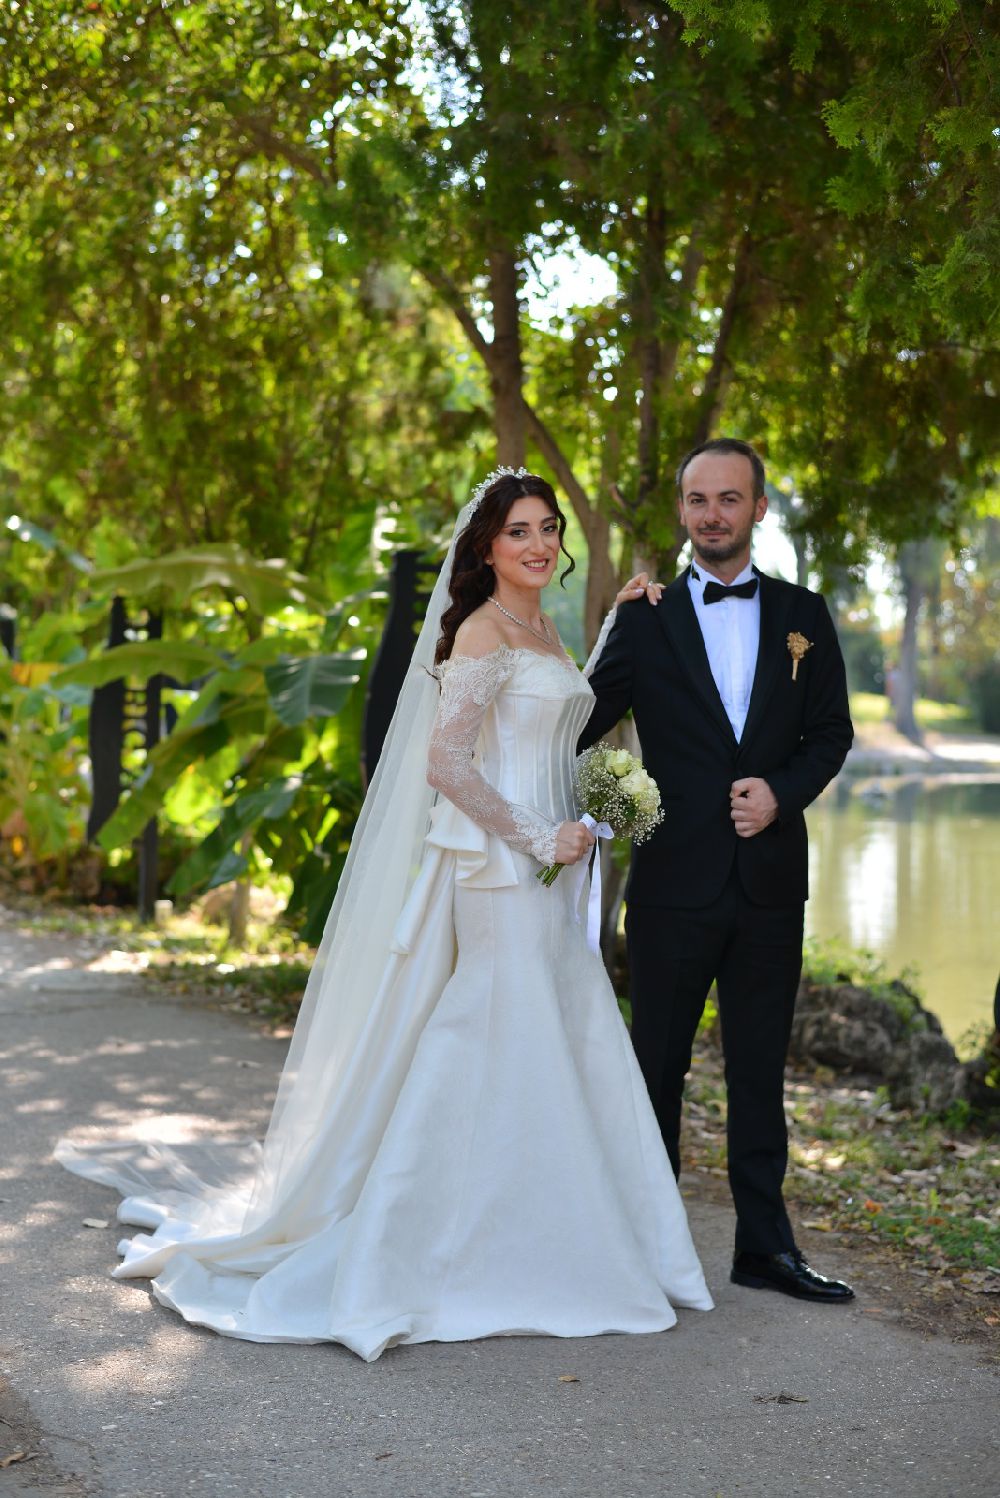 AGC'nin mutlu günü Mediha Düden'in oğlu evlendi